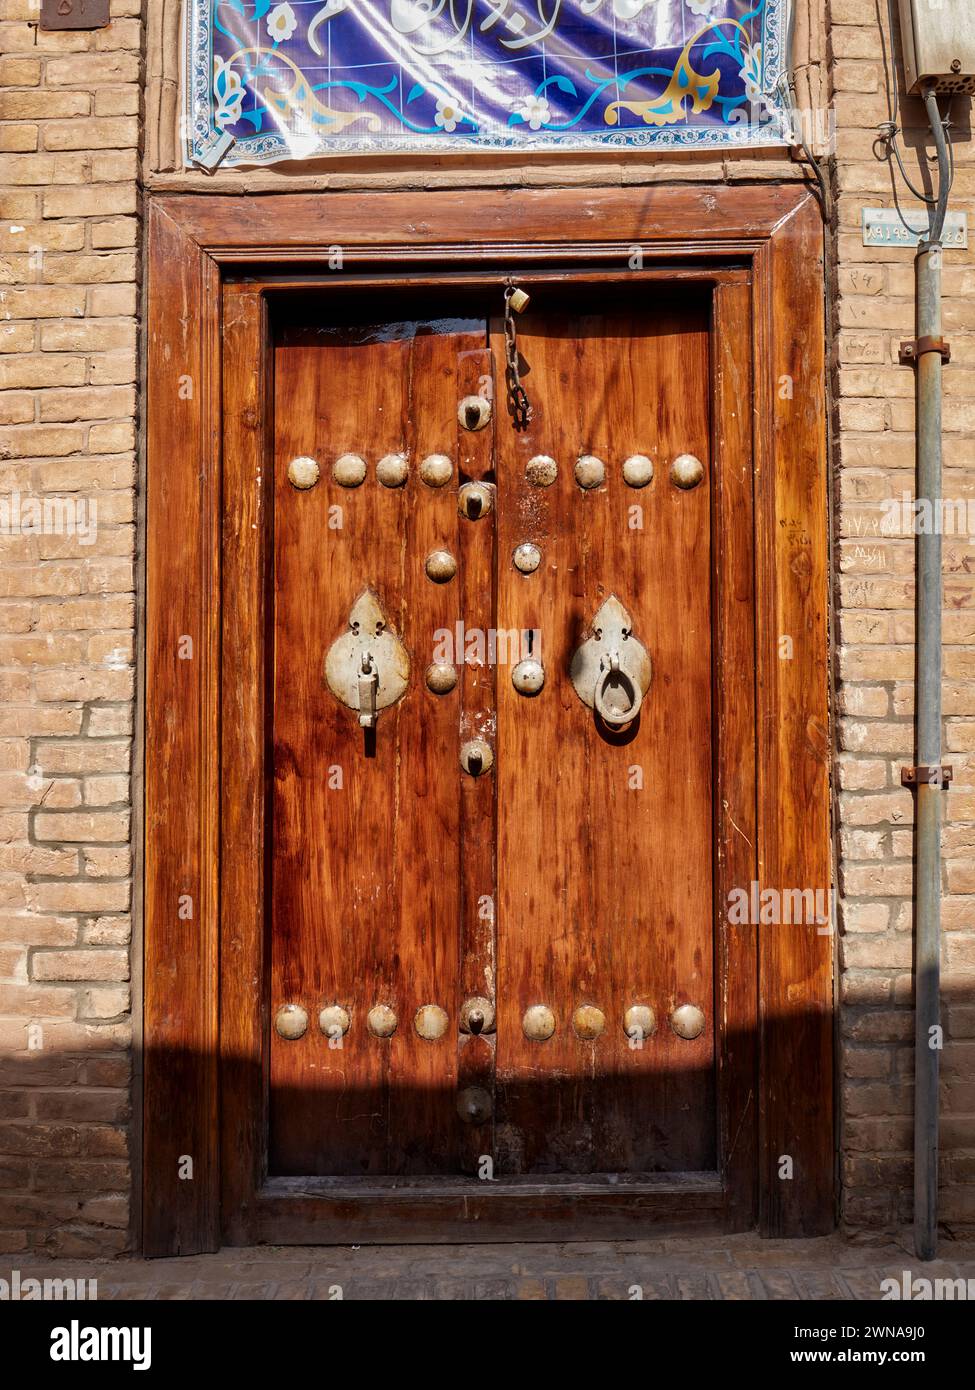 Alte Holztür mit zwei separaten Klopfern - Metallstange für Männer und Metallring für Frauen. Yazd, Iran. Stockfoto